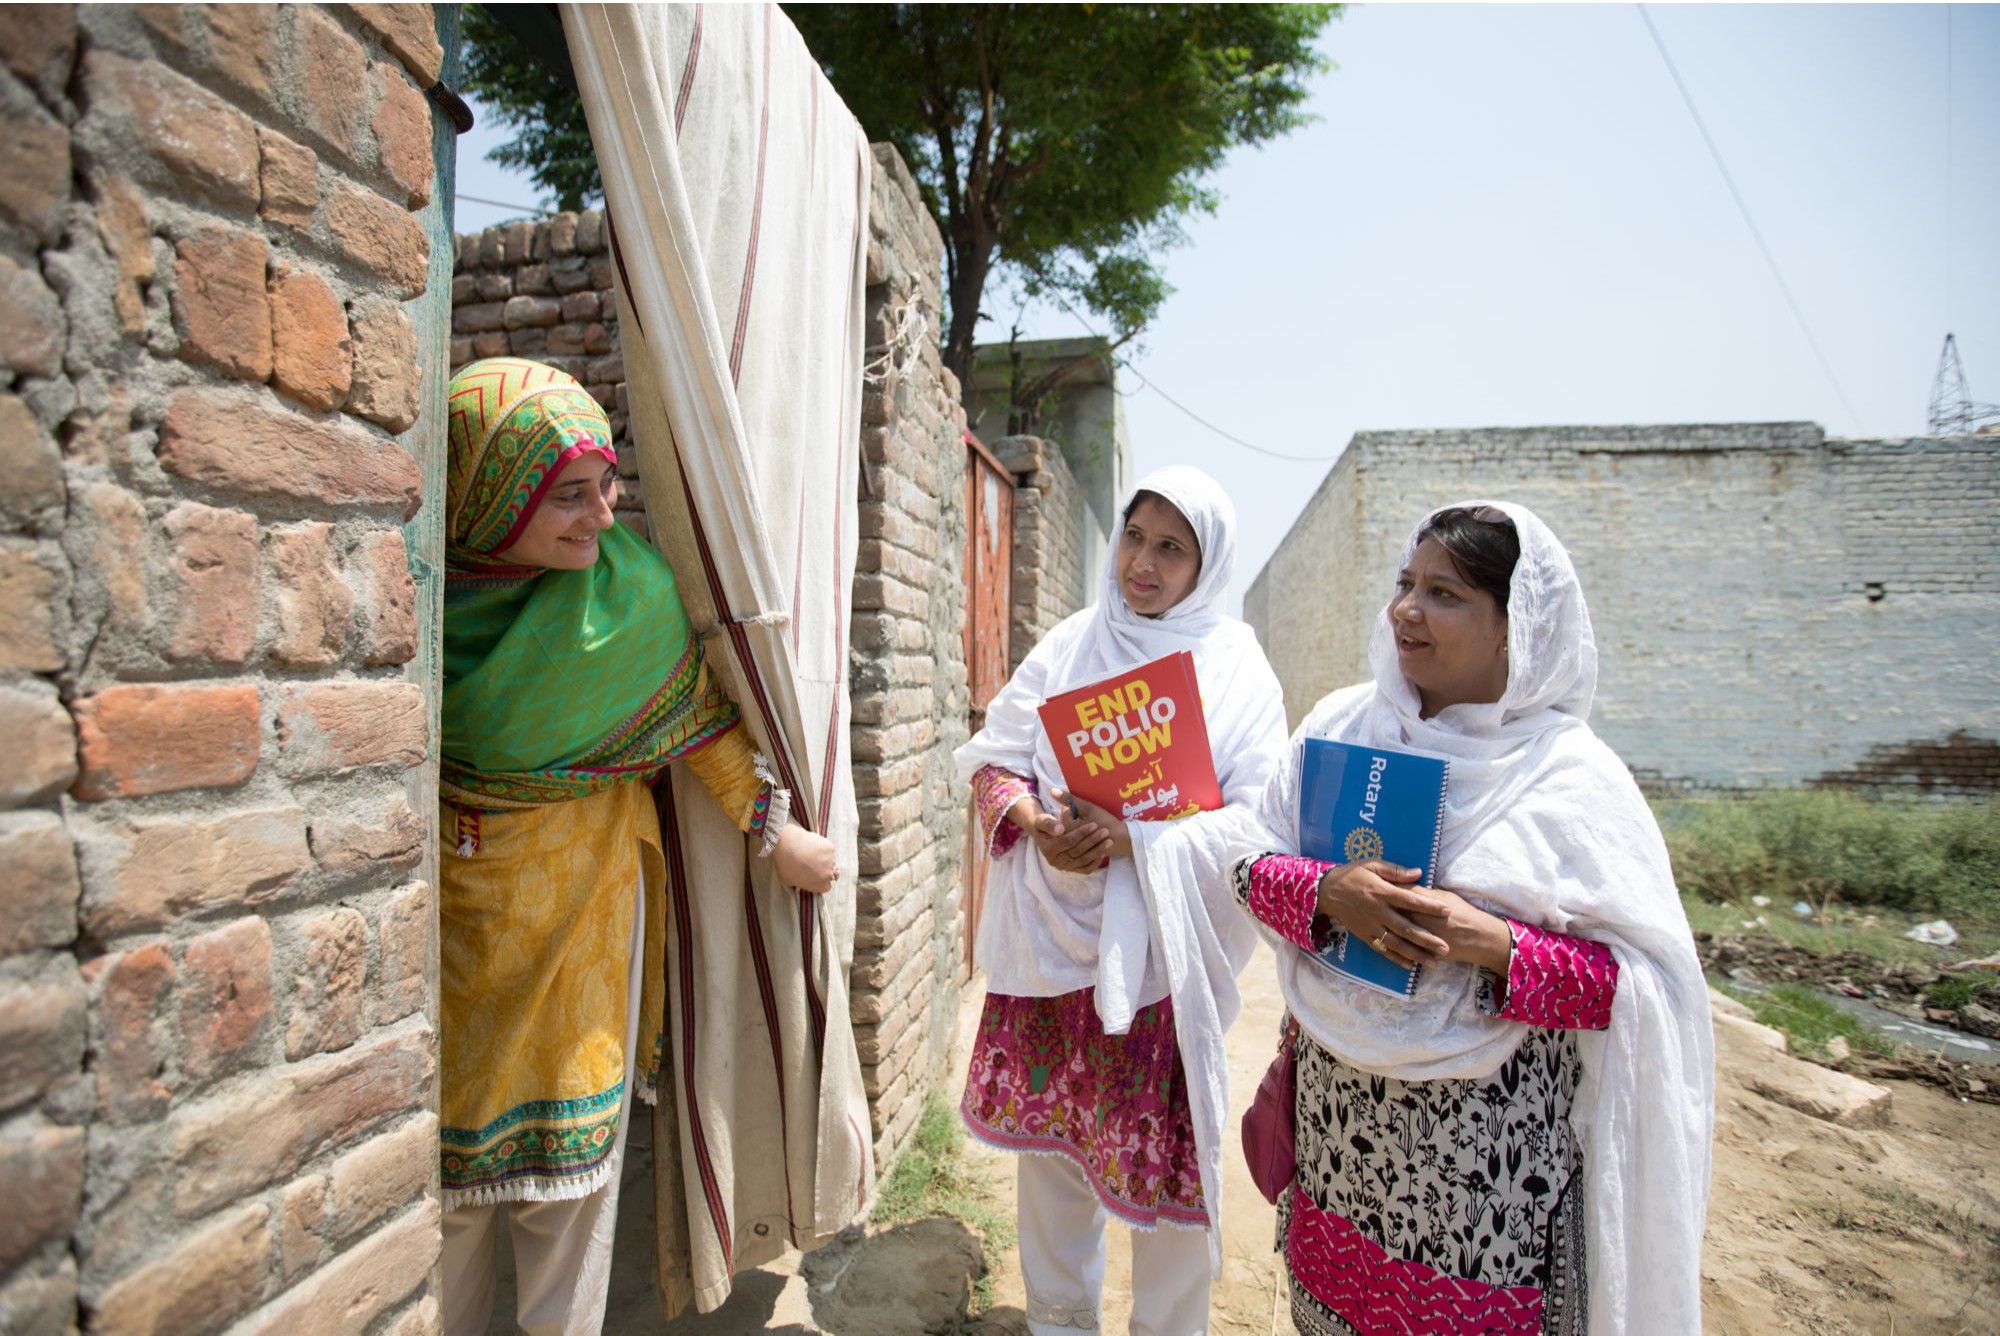 Gesundheitsfachkräfte informieren in Pakistan über die Polio-Impfkampagnen. Bild: rotary.org